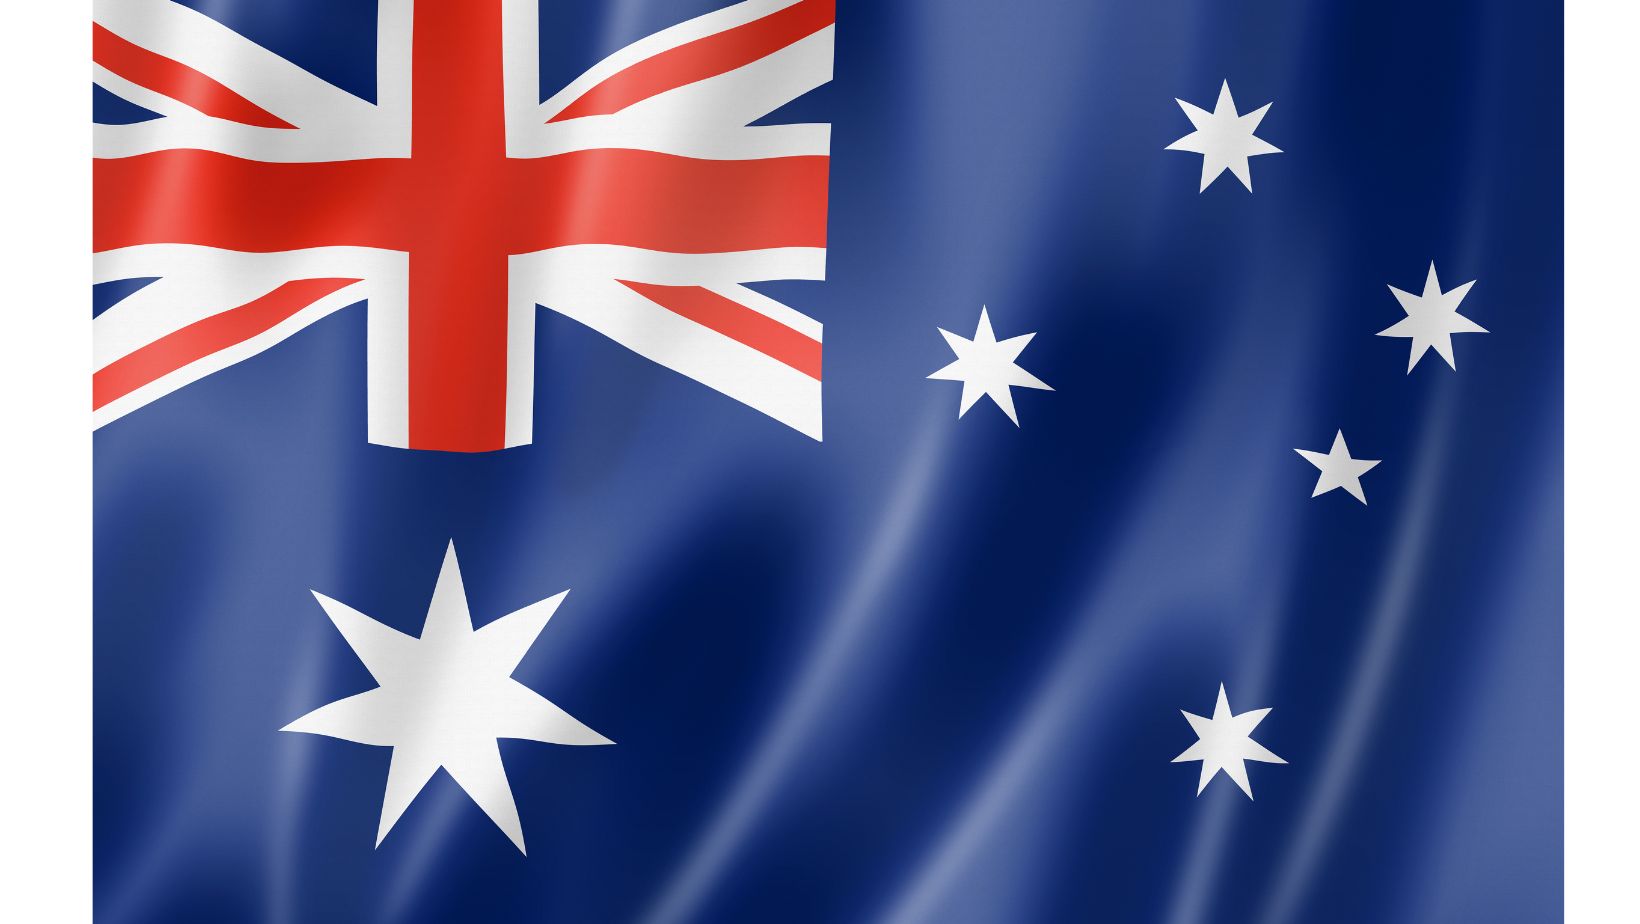 العلم الأسترالي: نجوم بيضاء وخطوط حمراء وبيضاء متقاطعة على خلفية زرقاء